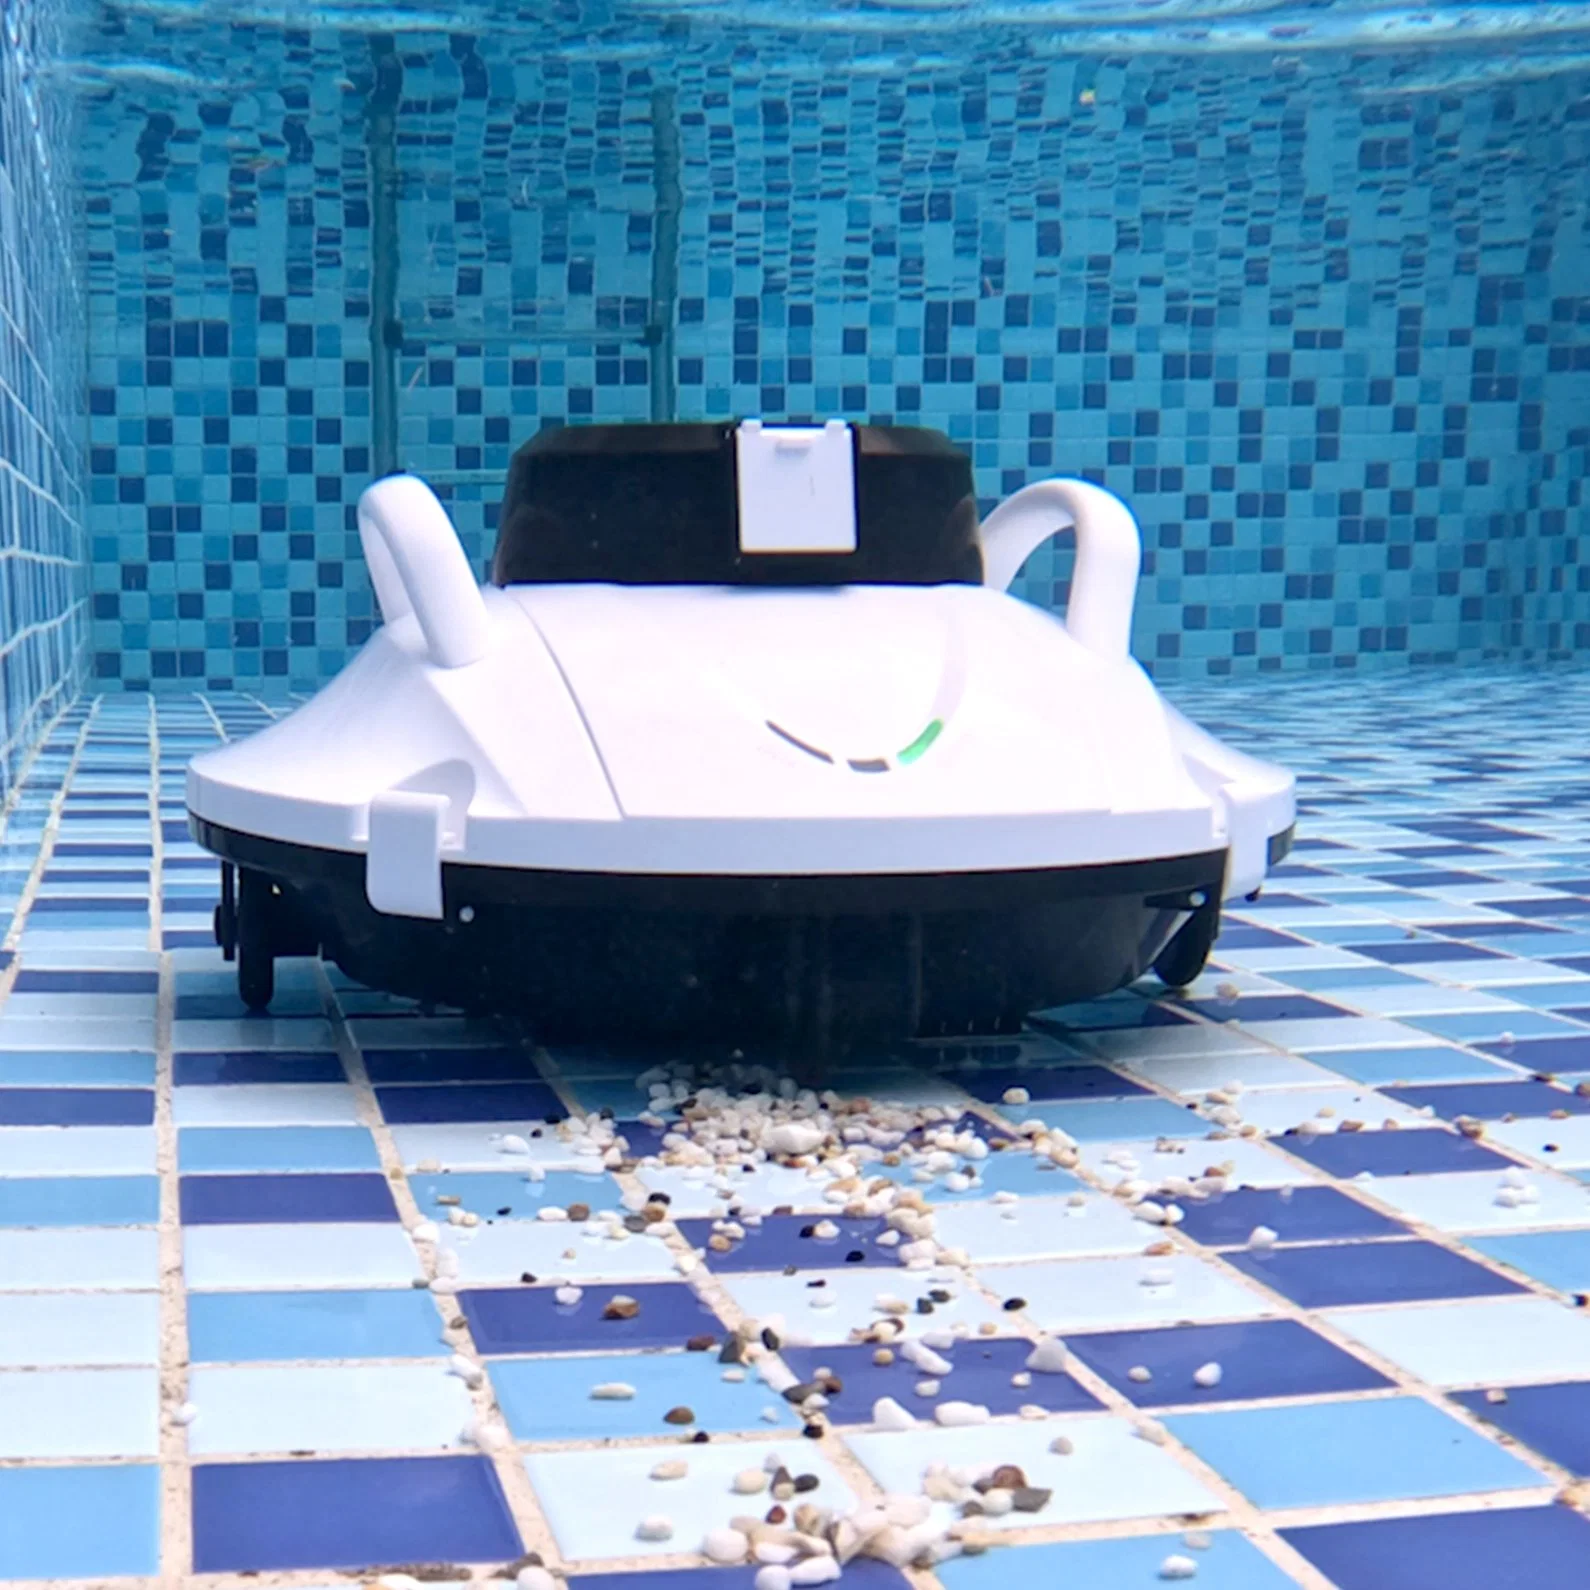 الصانع: Underwater Robotic Automatic Swimming Pool Cleaner Equipment الأدوات ألعاب المياه جيت سكي الماء تنظيف الروبوت بركة مكنسة كهربائية